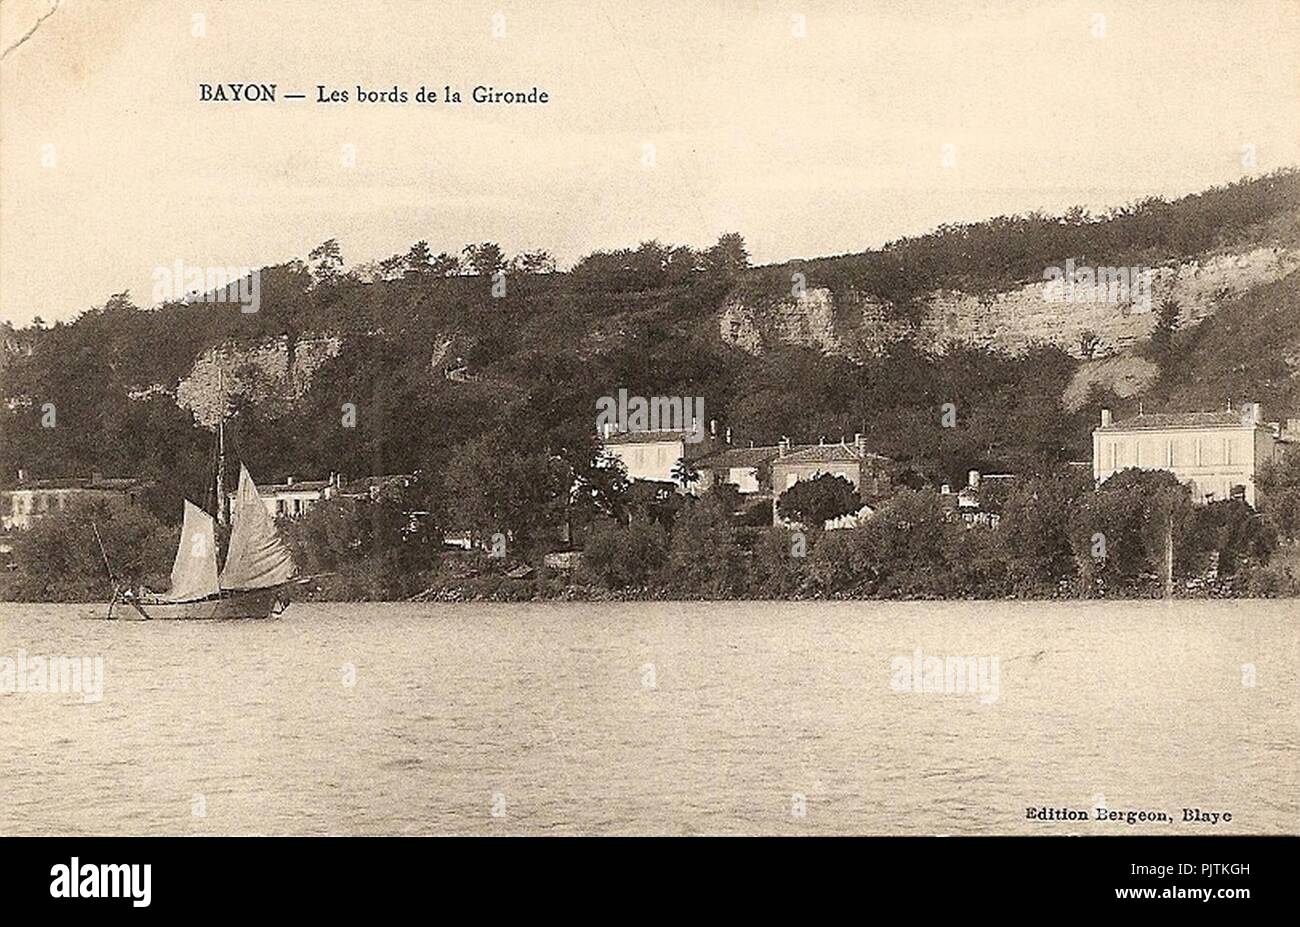 Bayon - Bords de la Gironde. Foto Stock